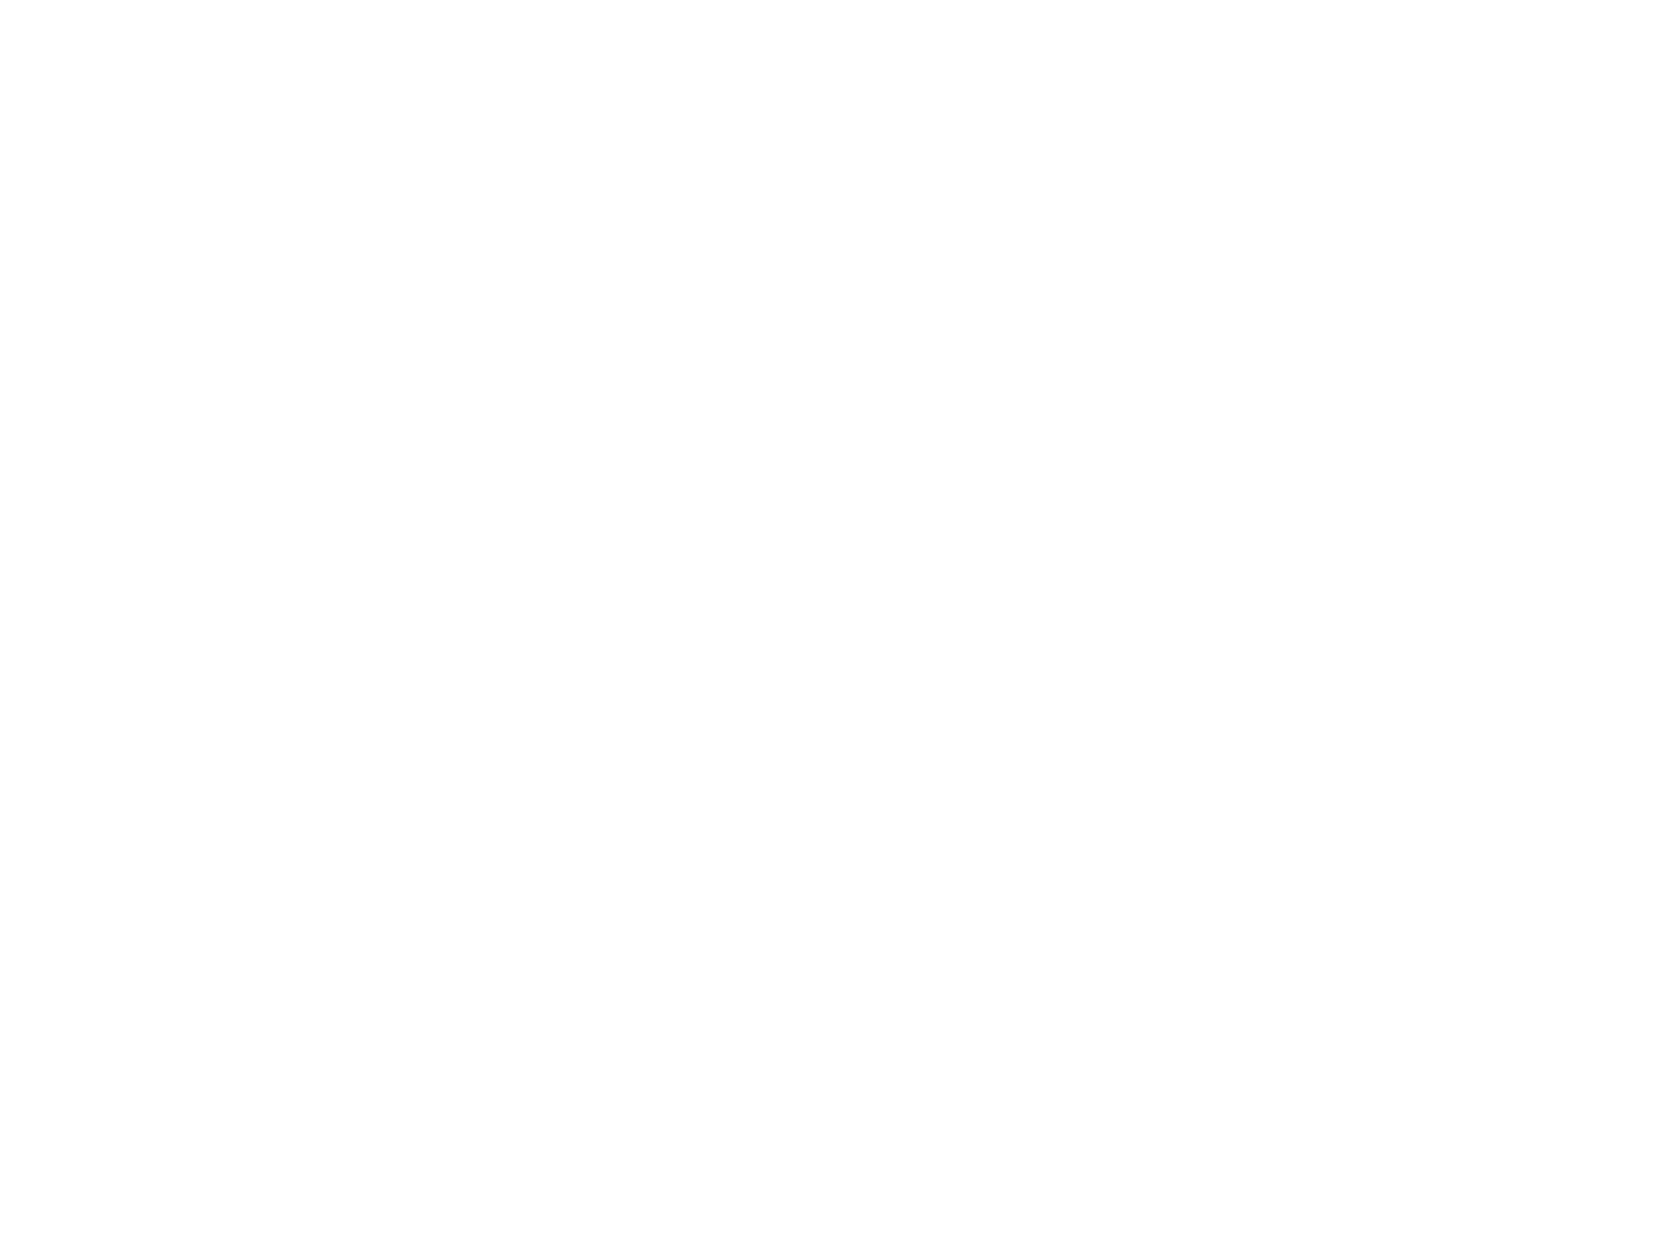 Дизайн логотипа для минеральной воды Agua Pura